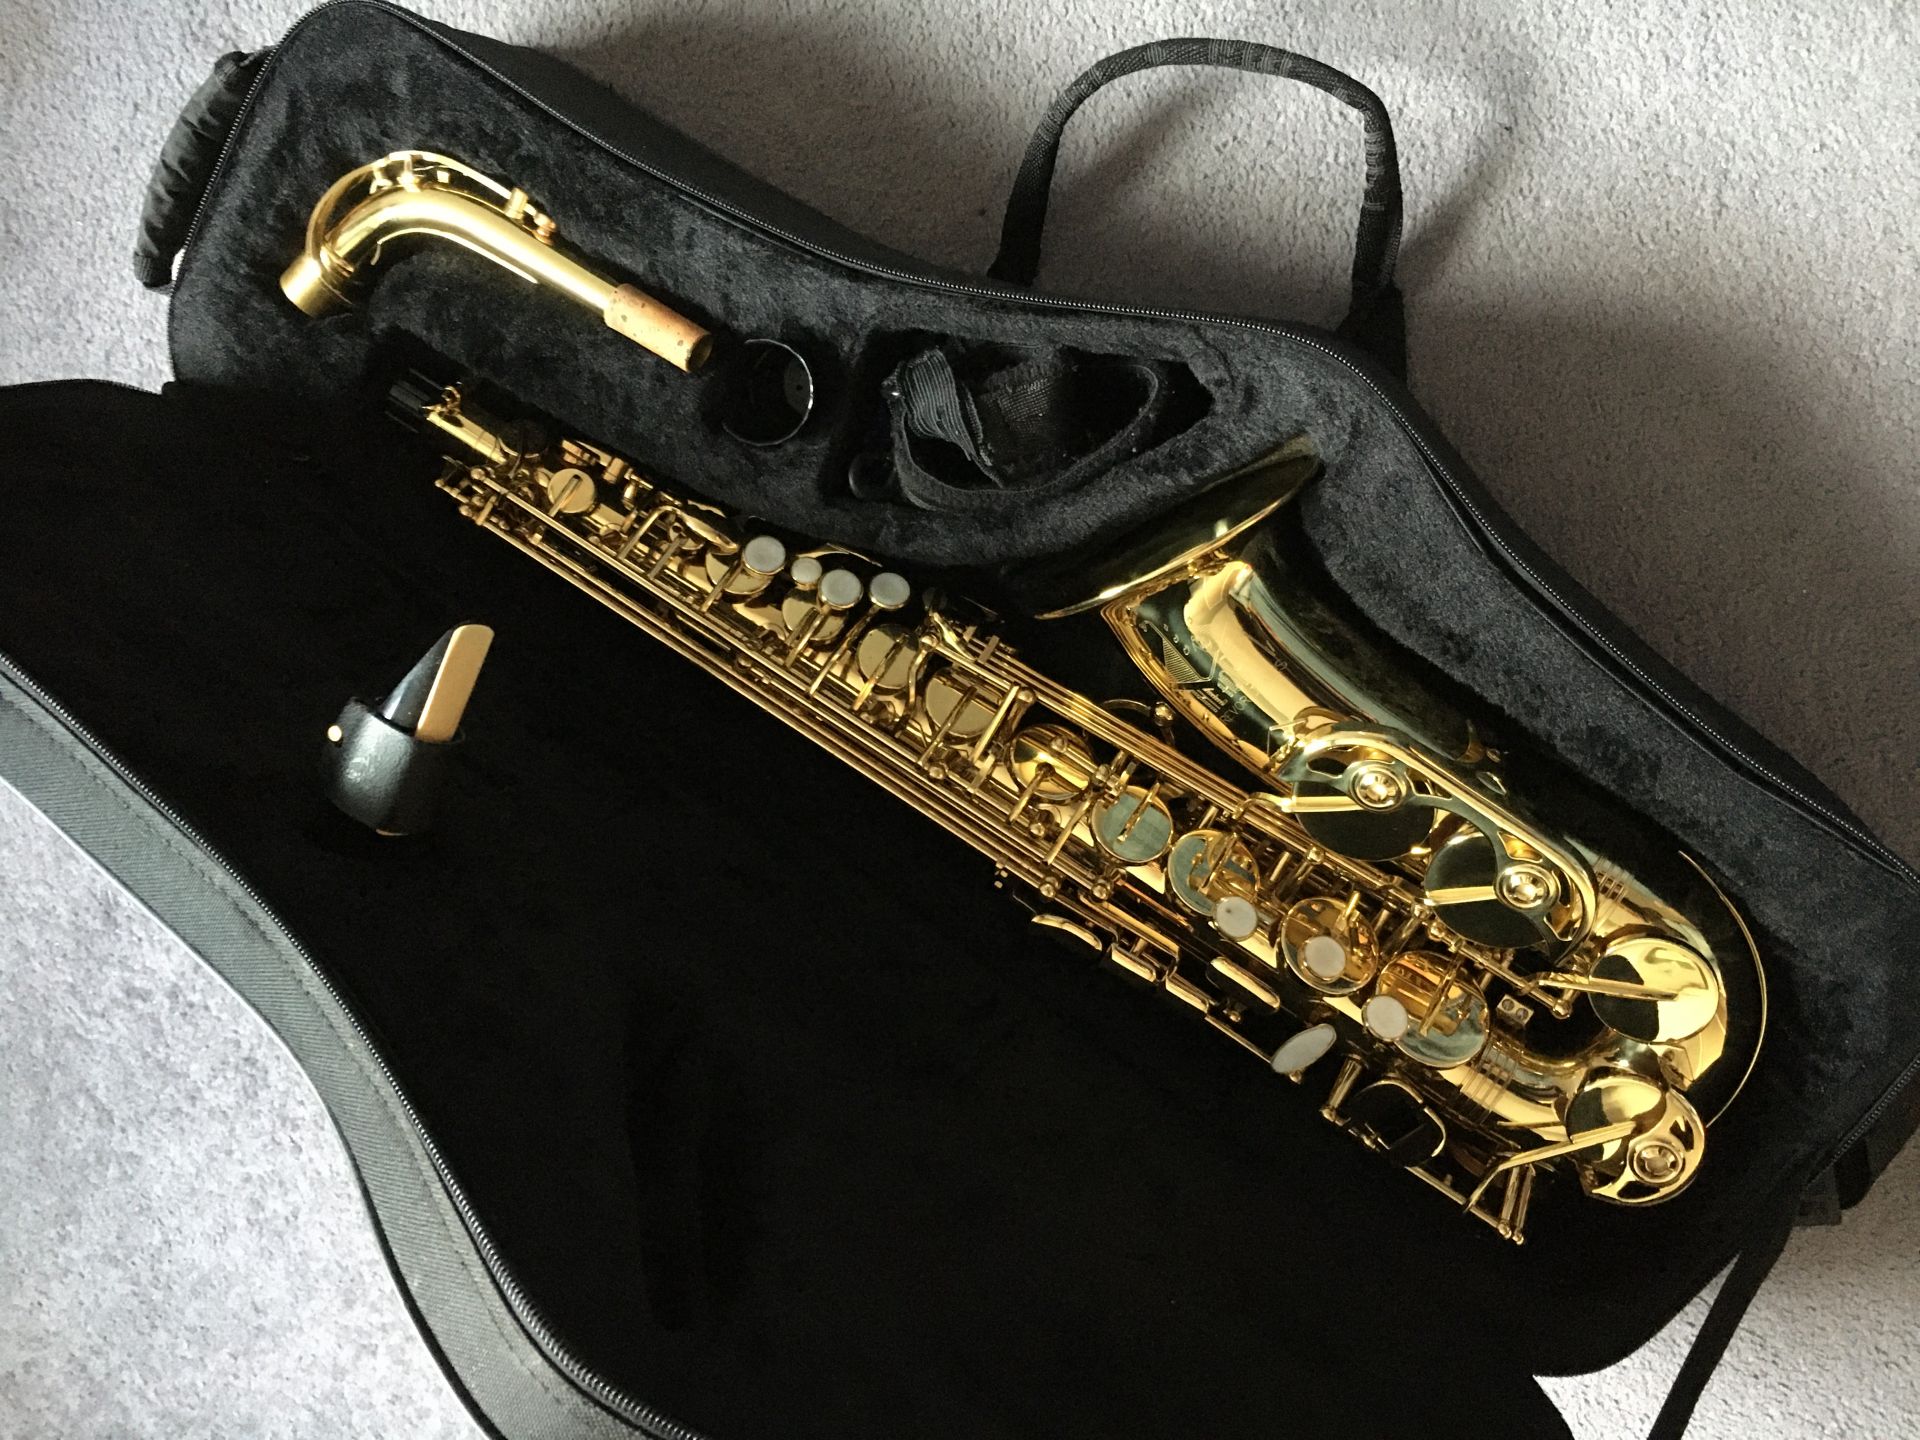 Eb Alto Saxophone (3721G); Trevor James (Gold Lacquer)